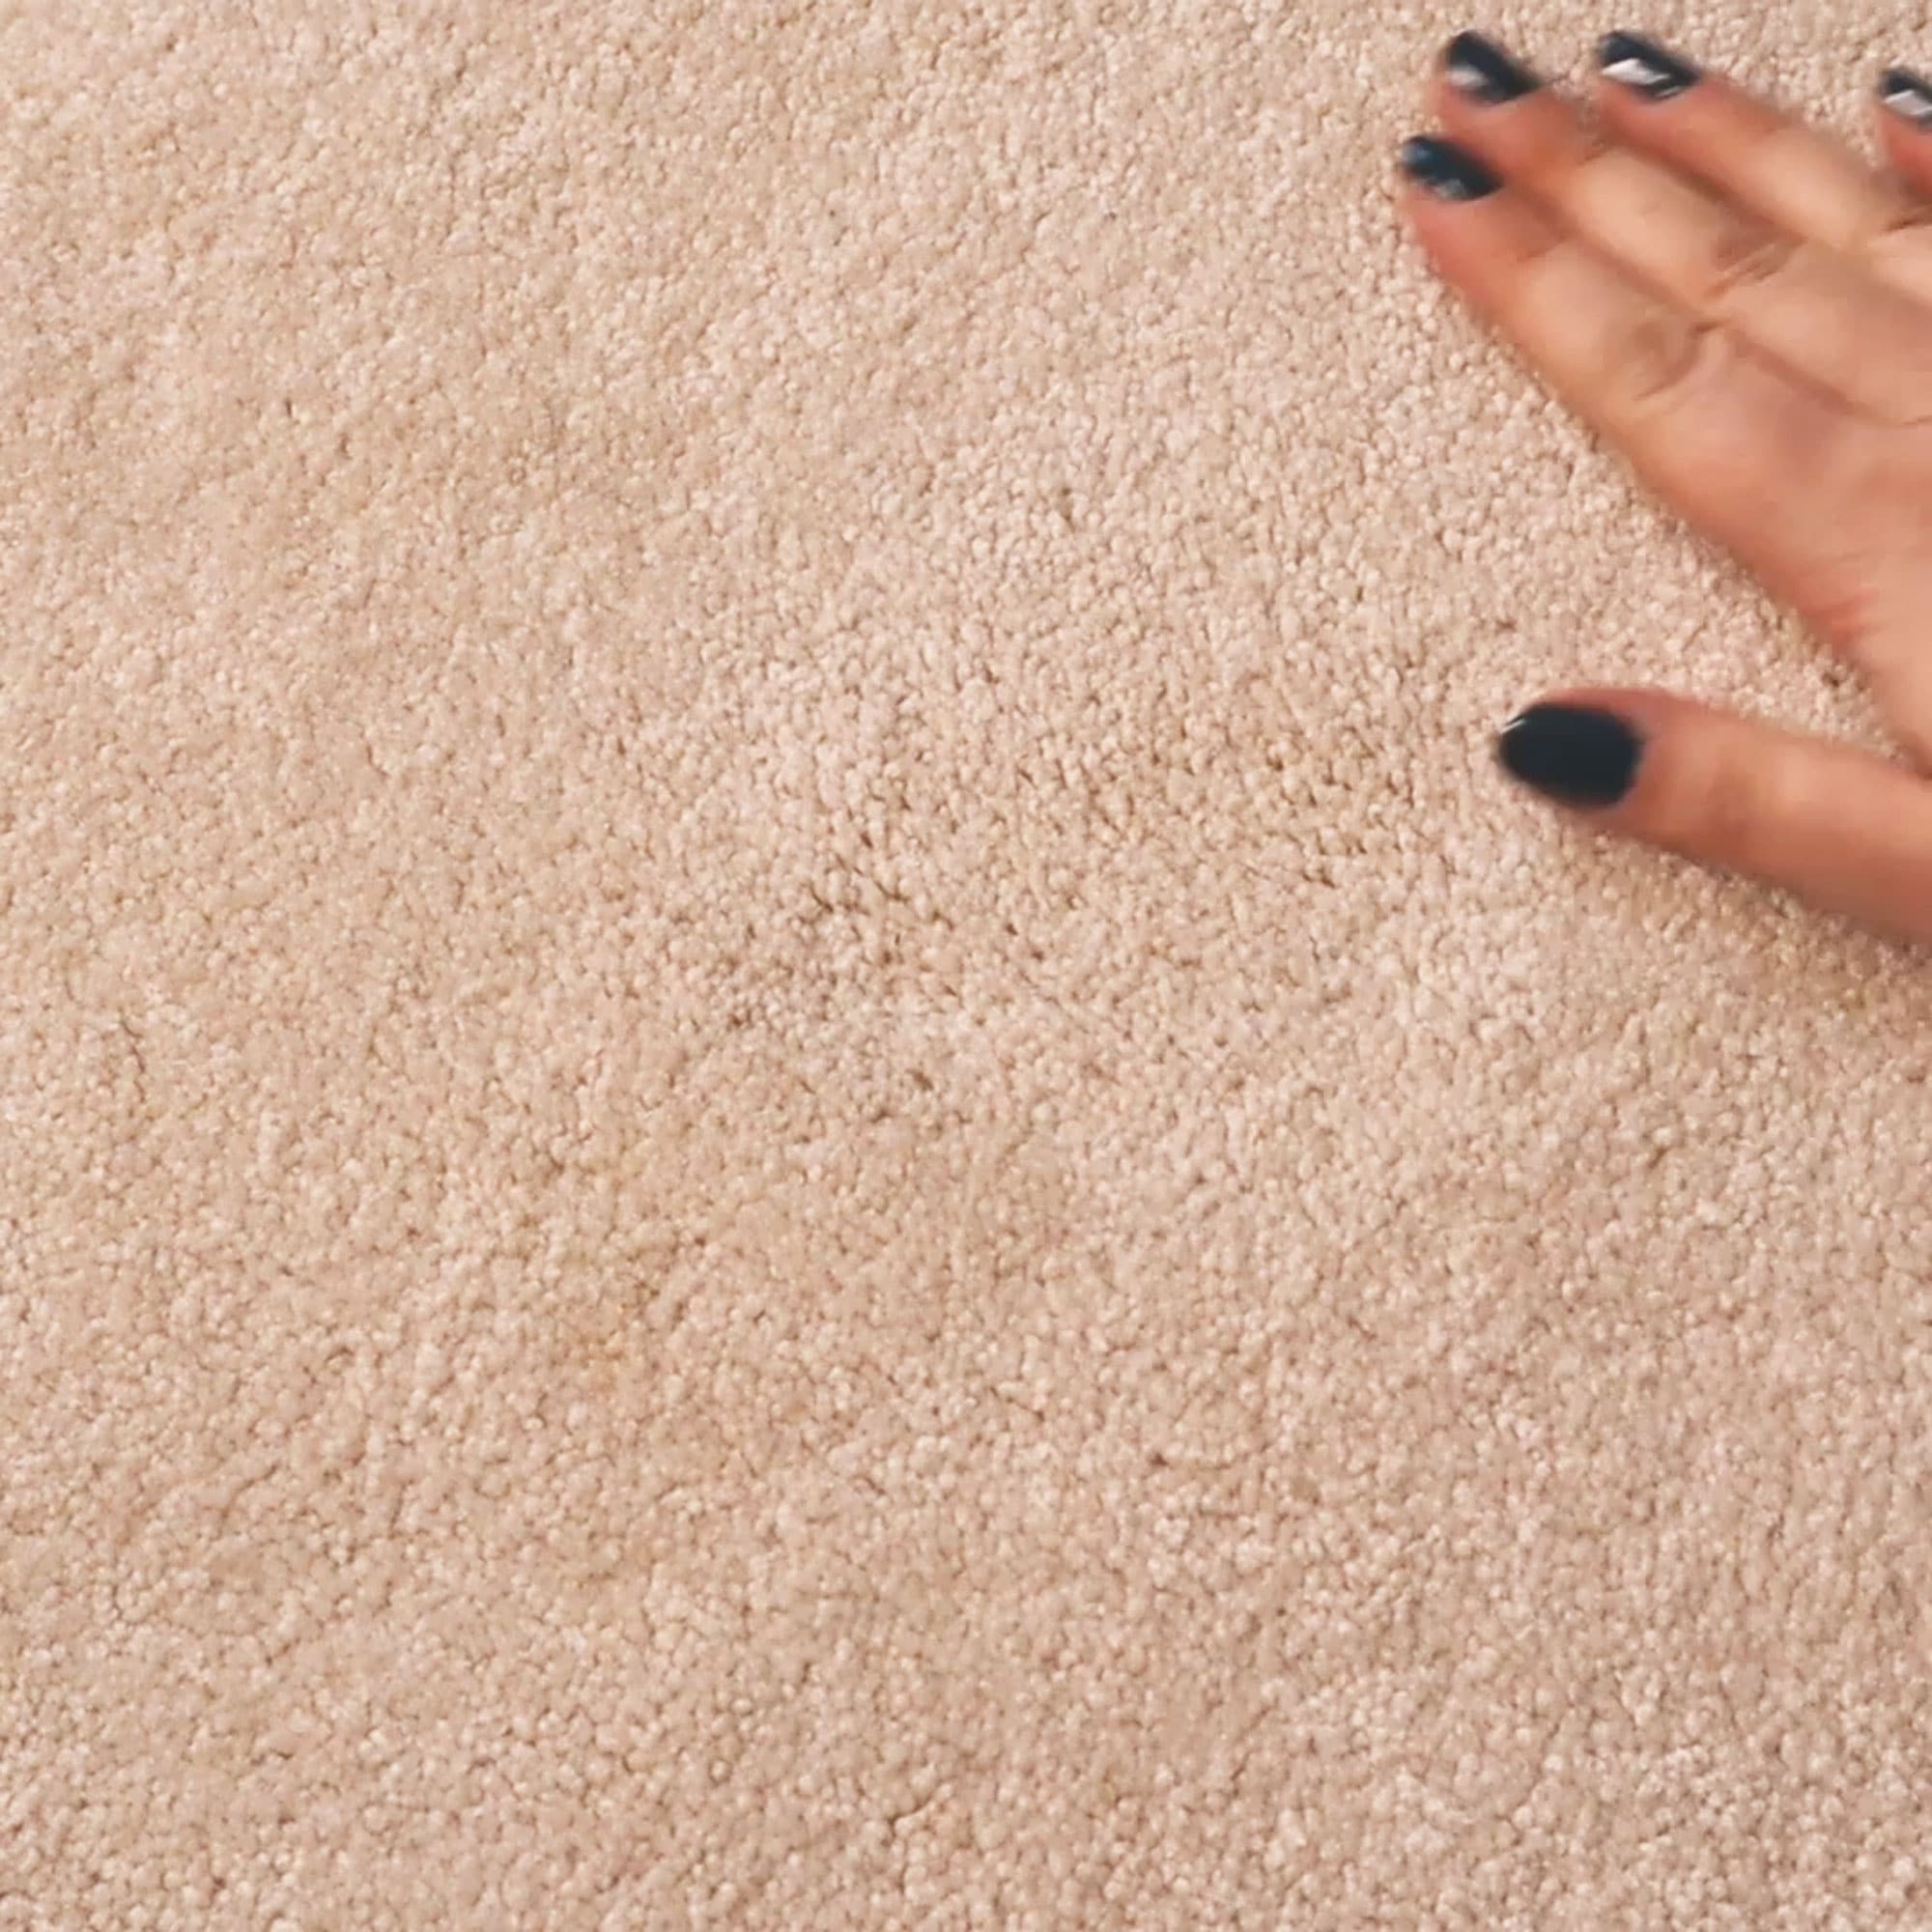 checking spot on carpet